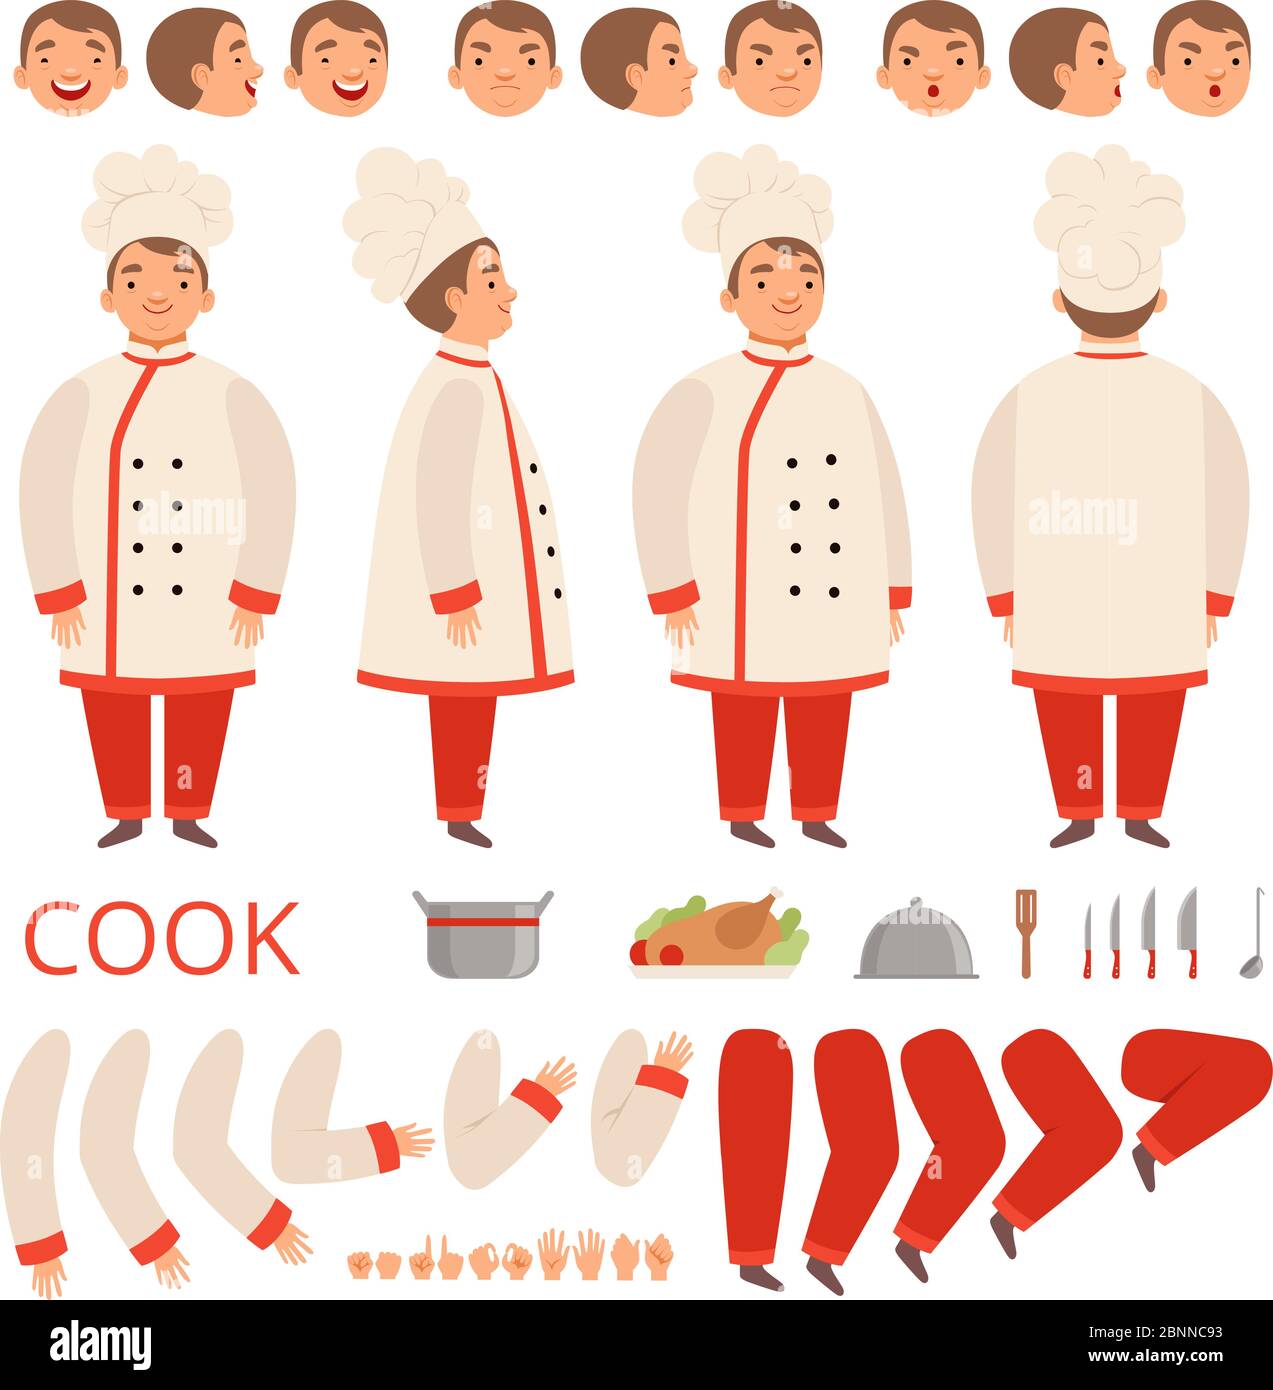 Animation de cuisine. Personnages de chef parties du corps mains bras tête et vêtements avec outils de cuisine vecteur kit création Illustration de Vecteur